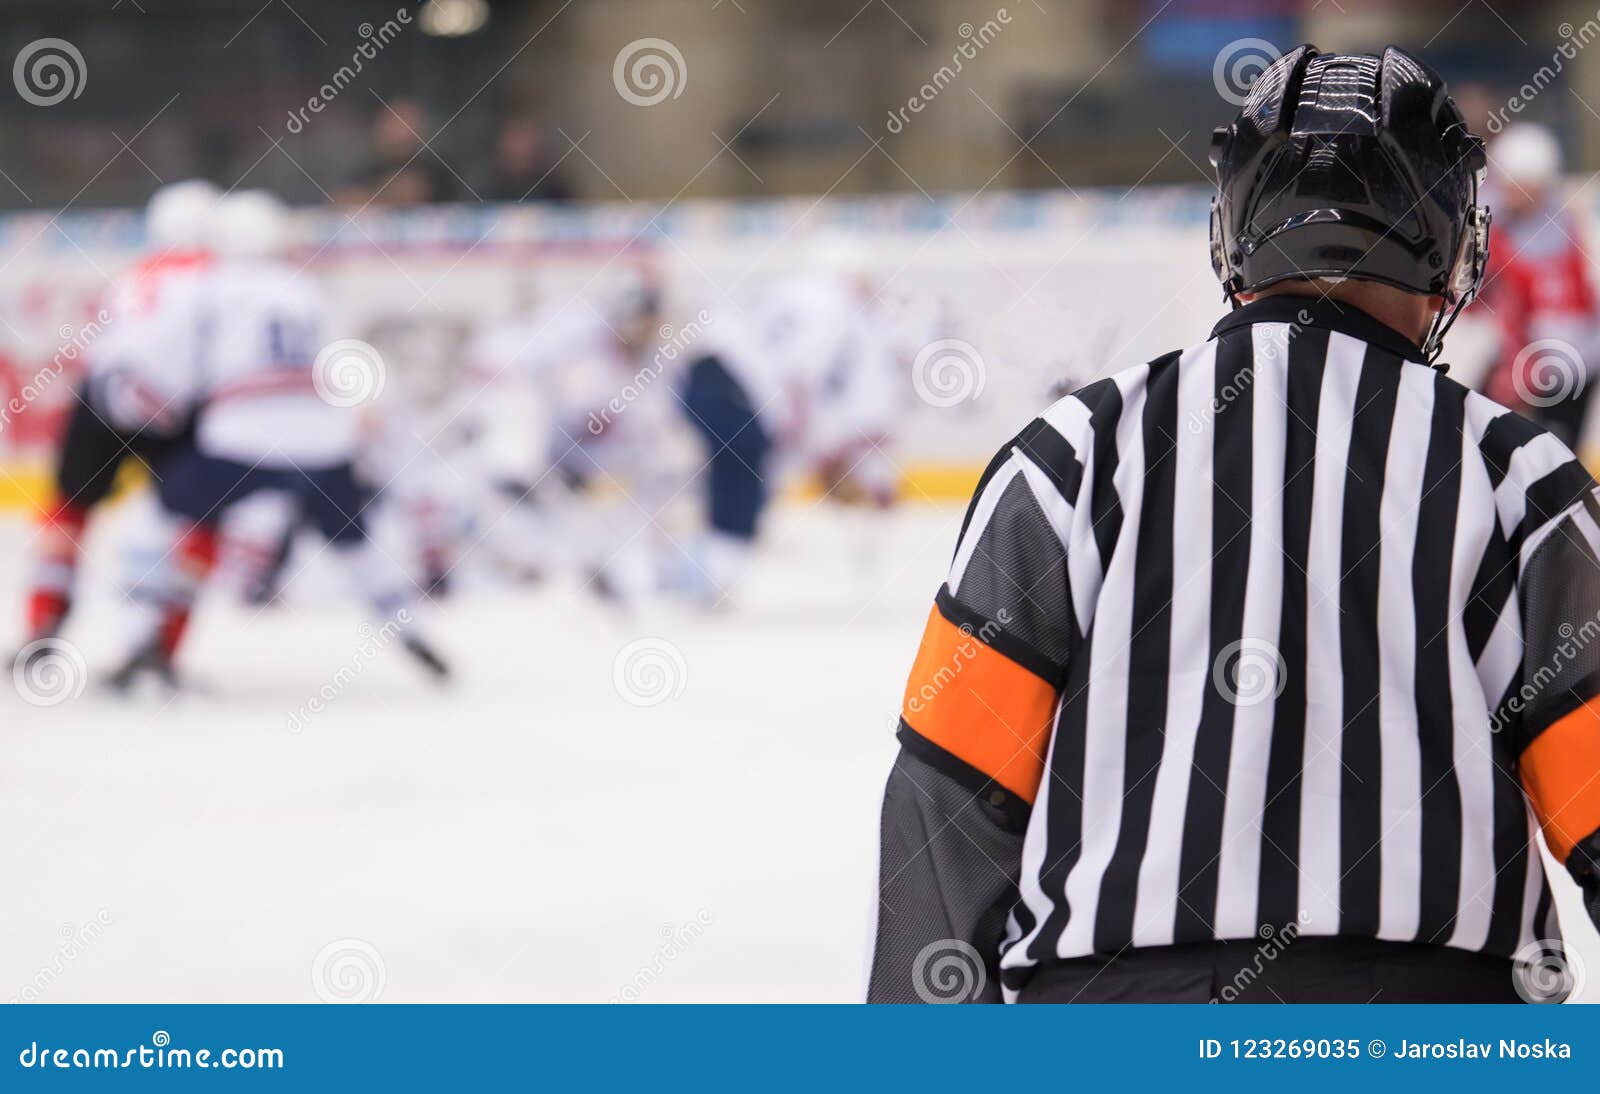 hockey referee on ice